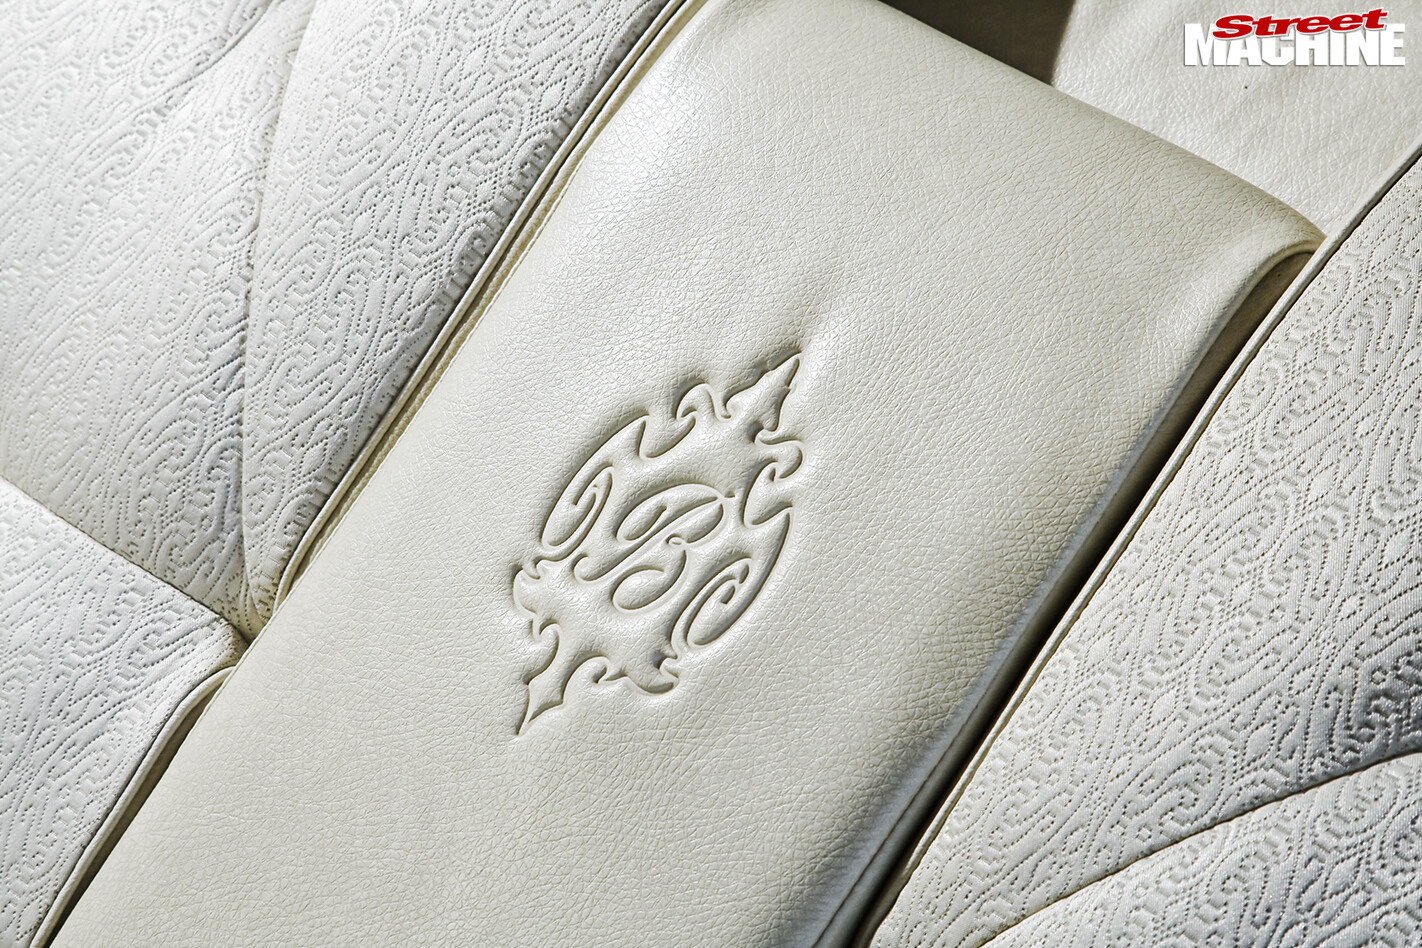 Holden -Brougham -interior -seats -stitching -detail